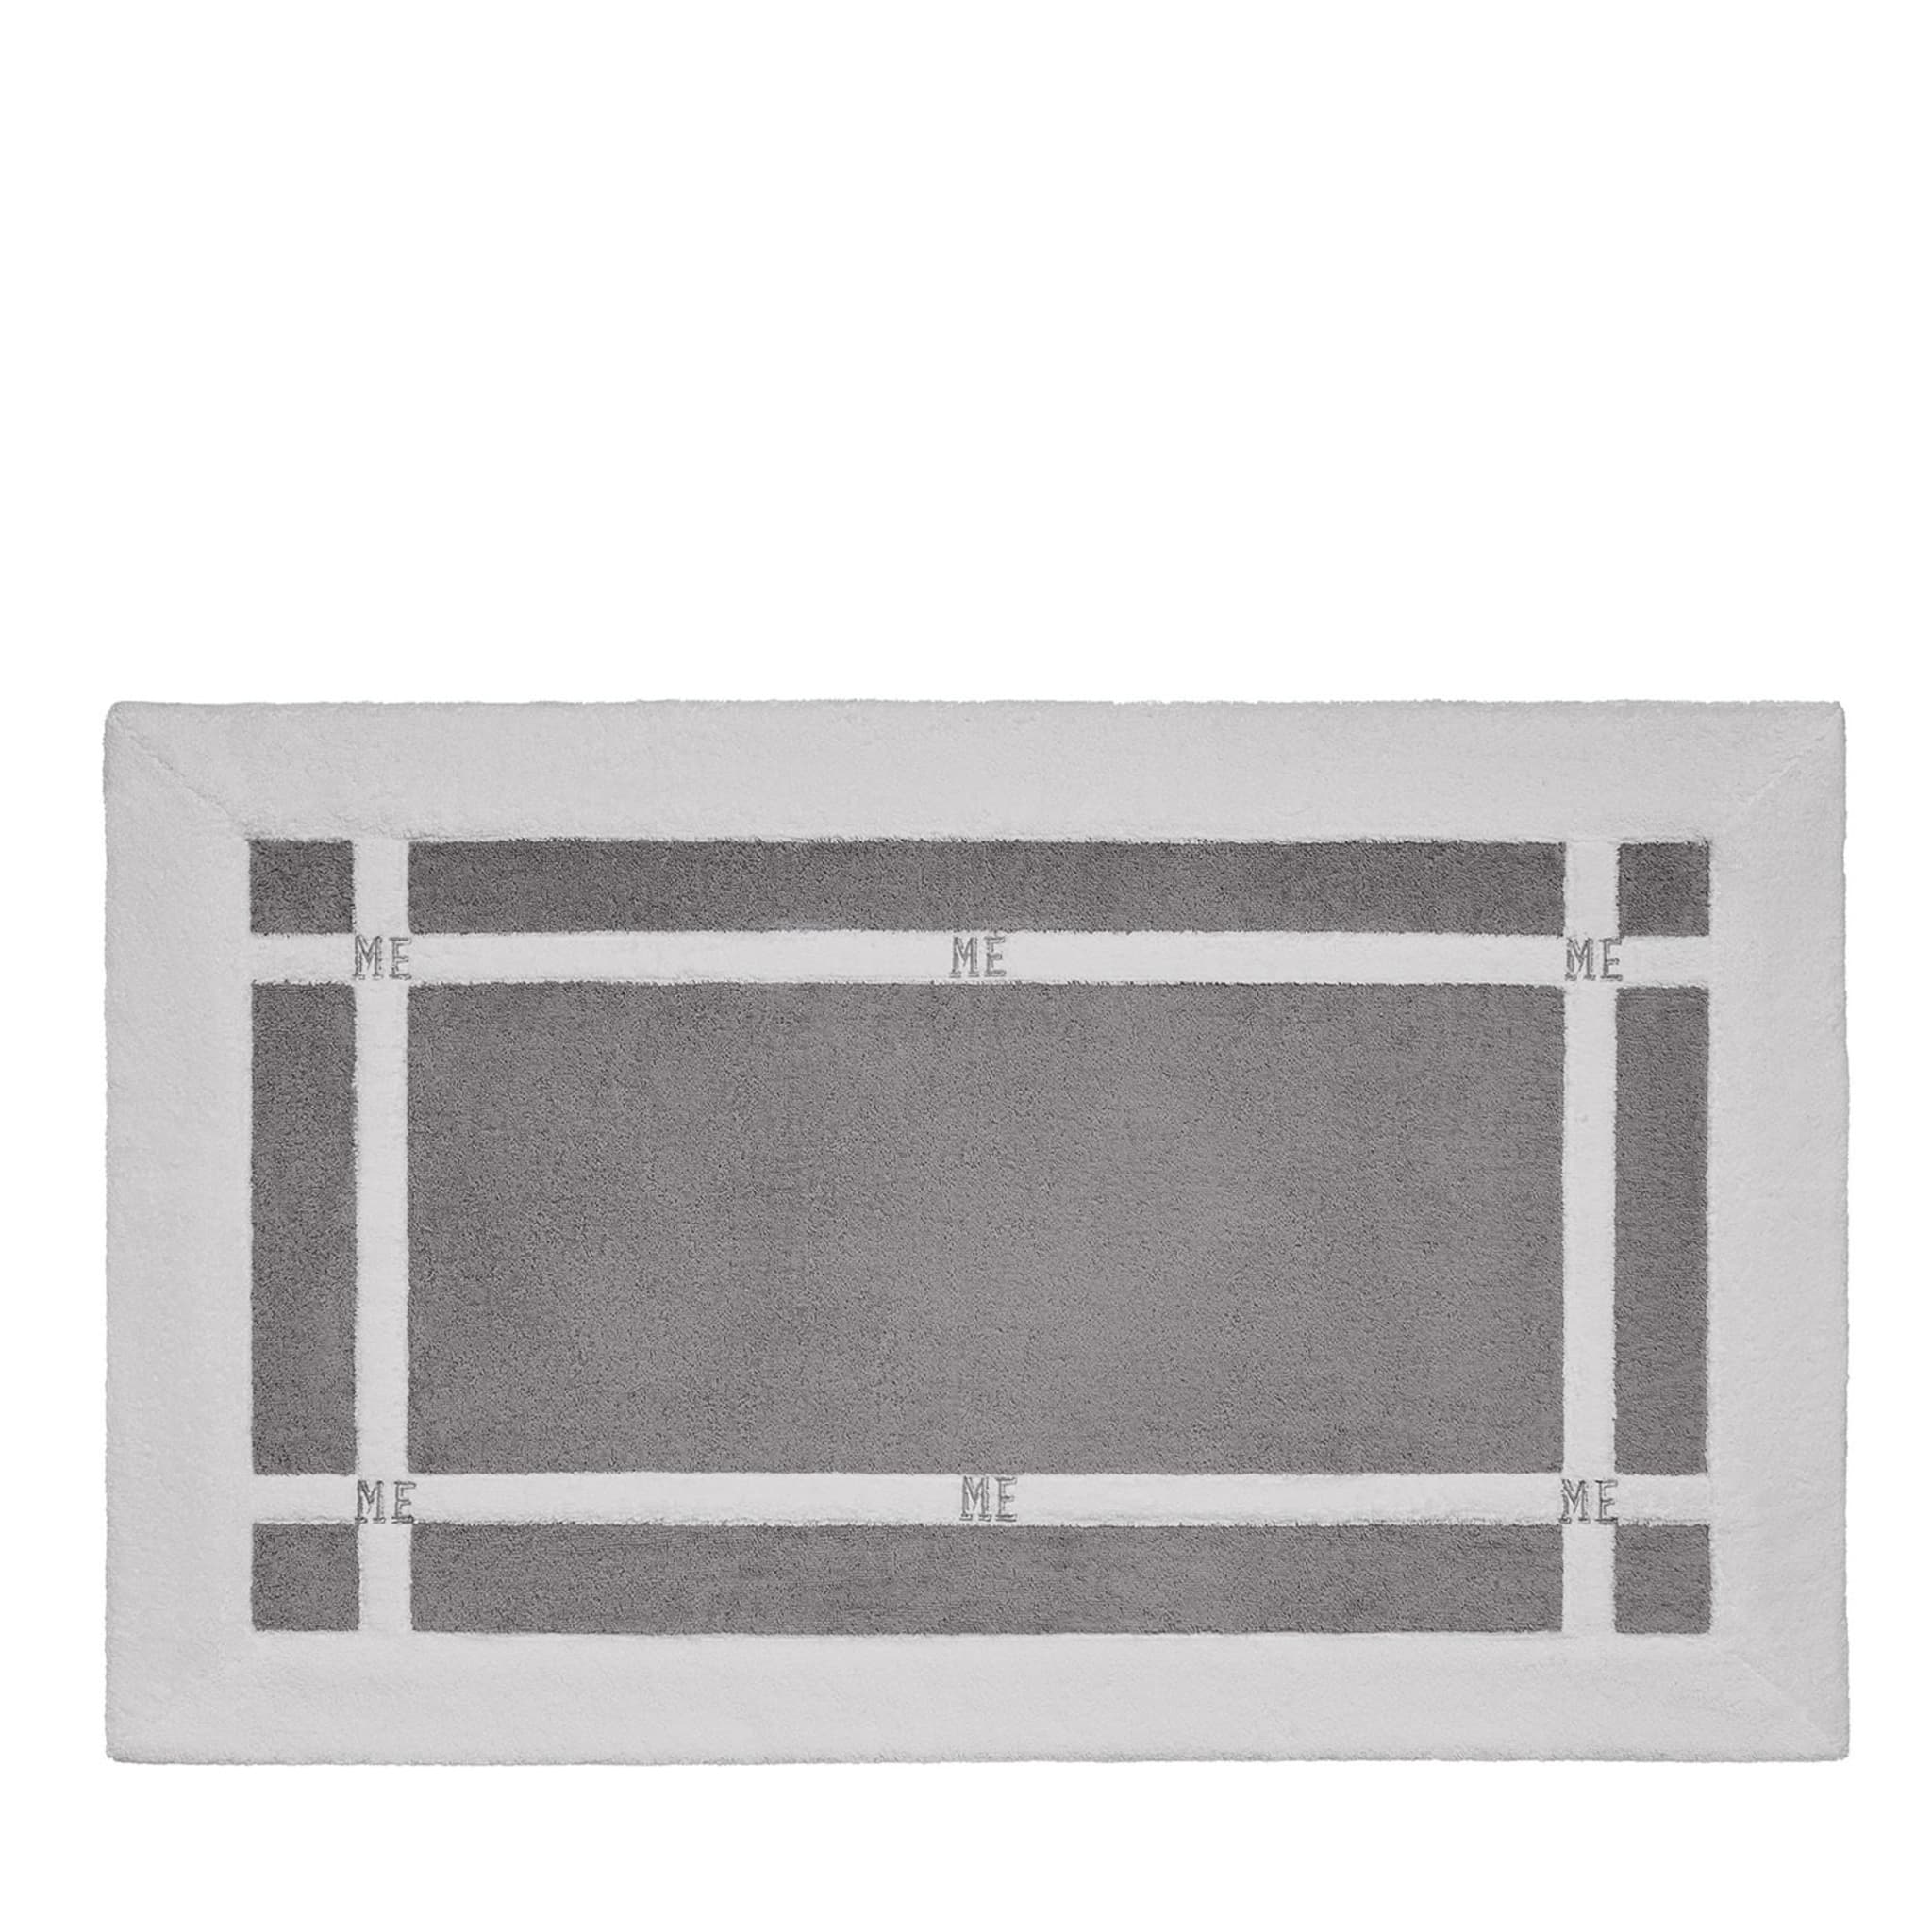 Tappeto da bagno Pompidou in stile geometrico bianco e grigio - Vista principale